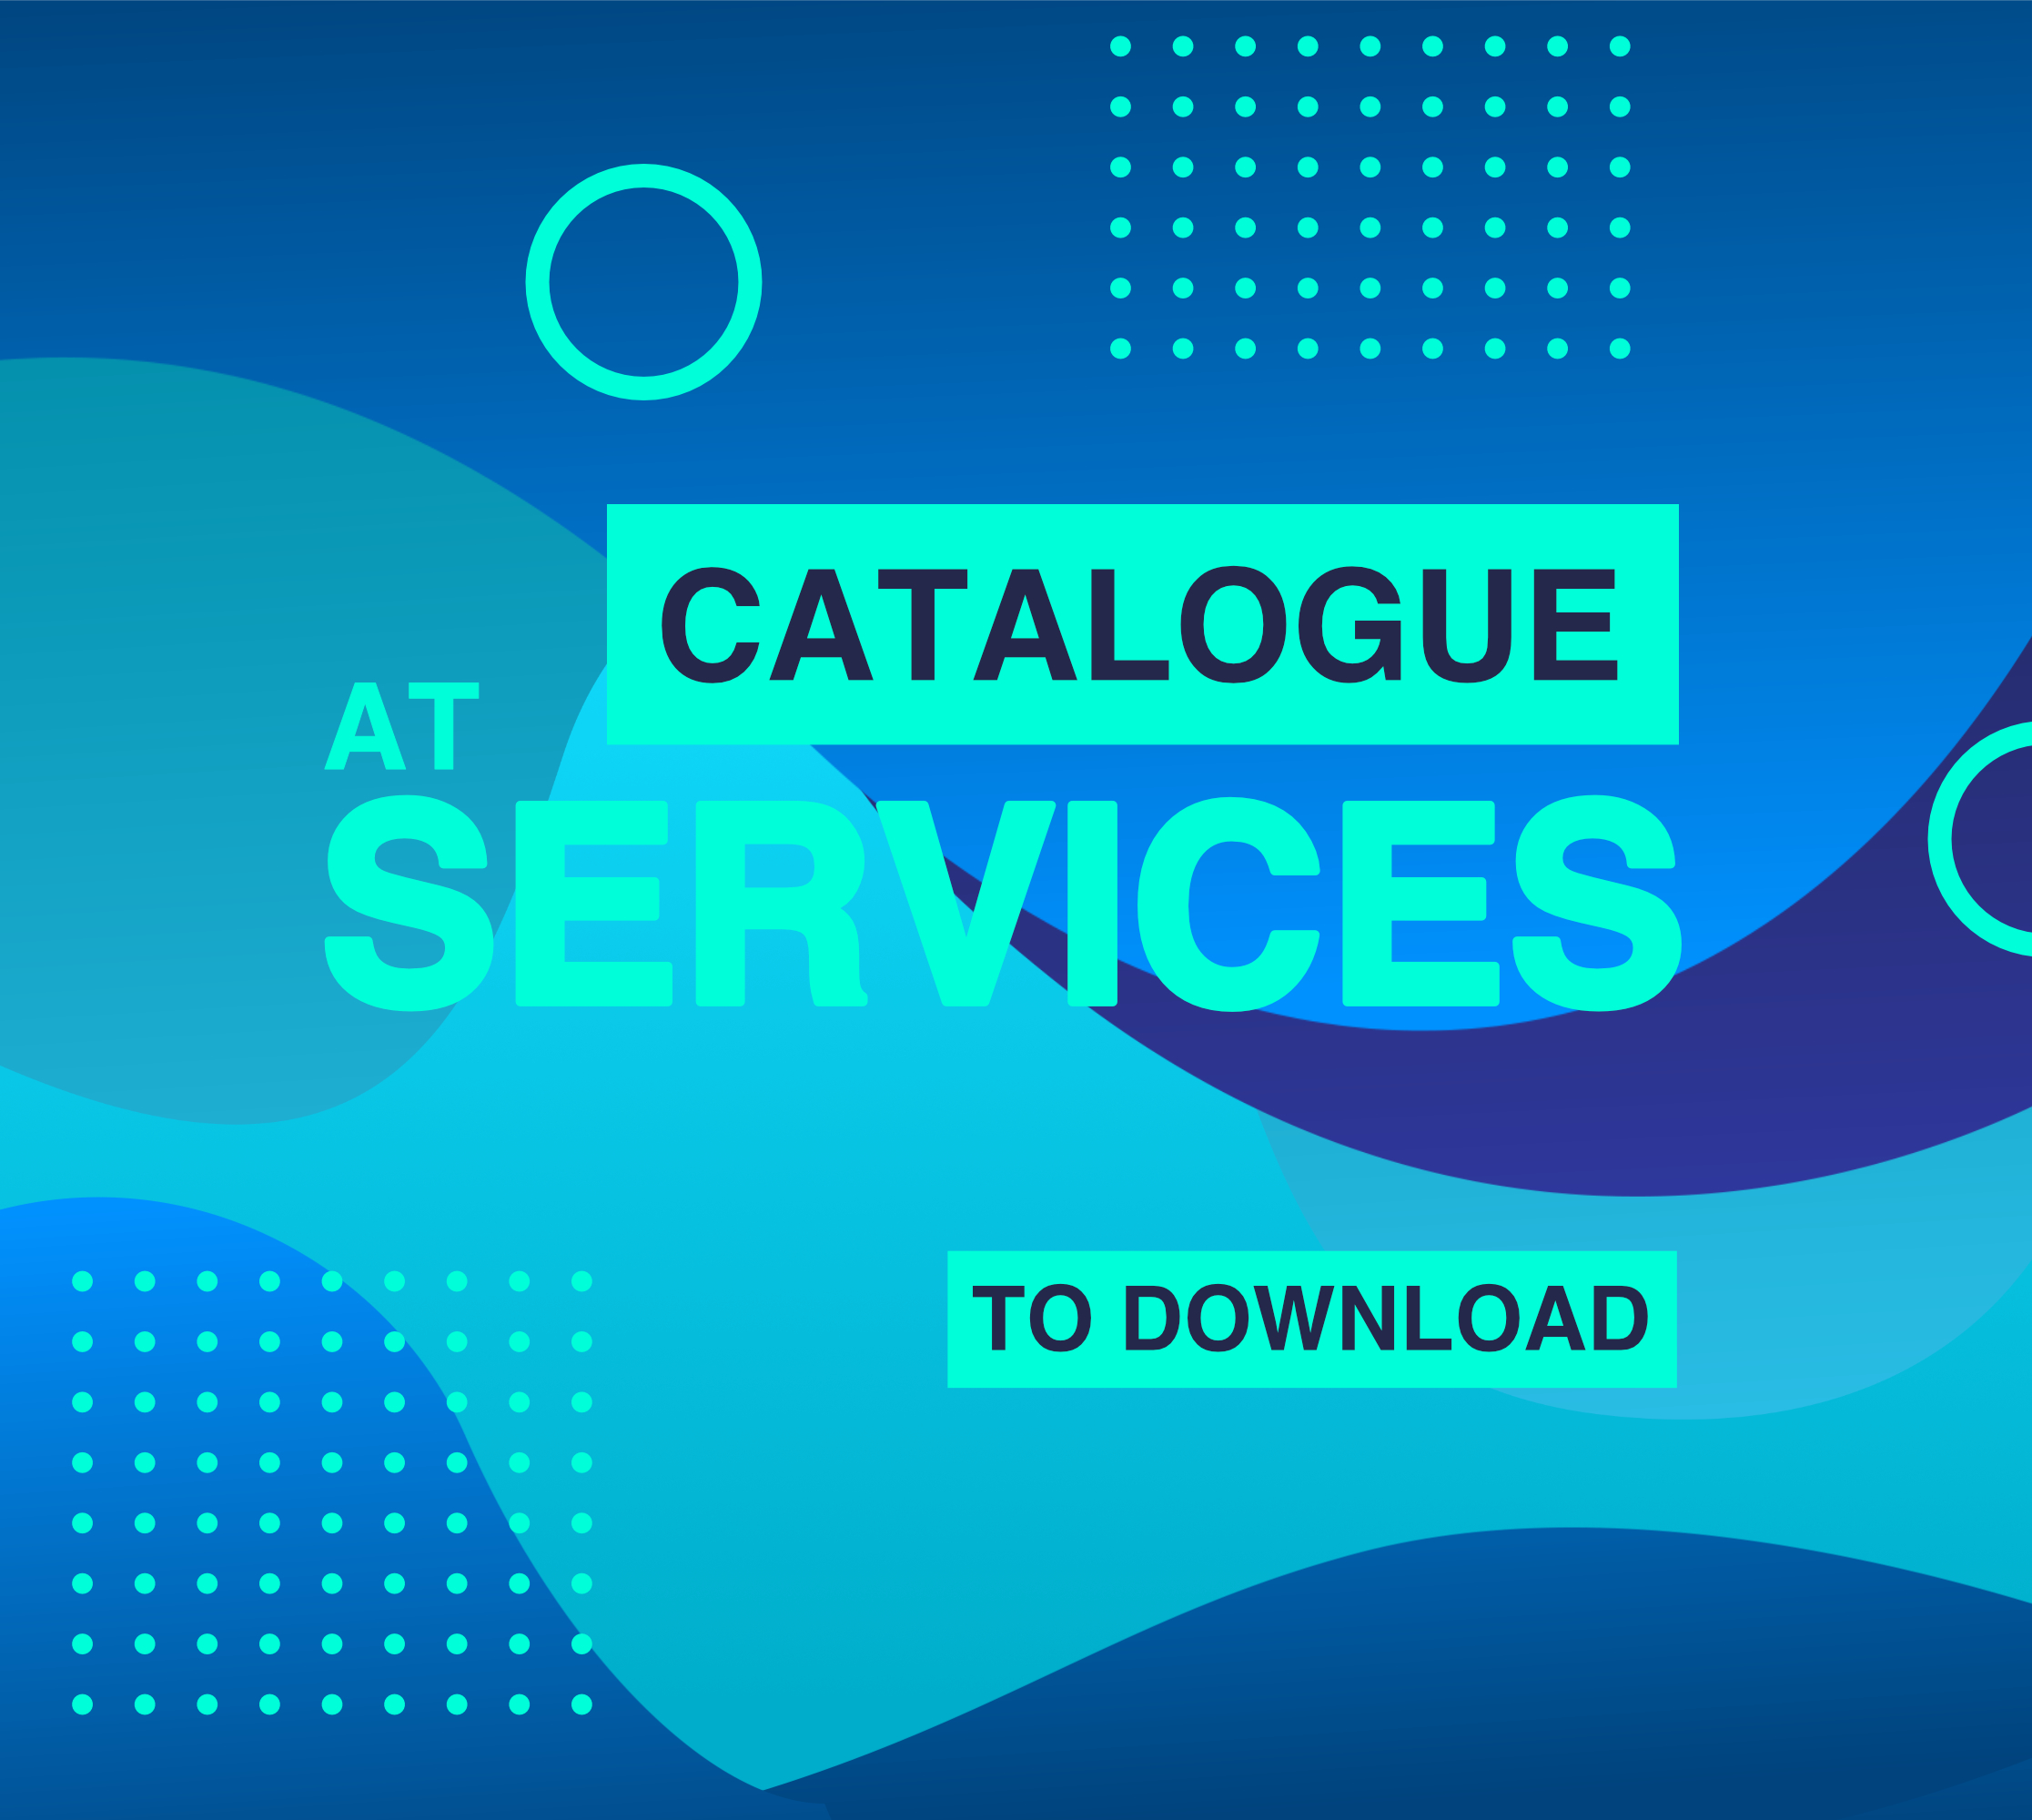 Banner de catalogo de servicios en inglés